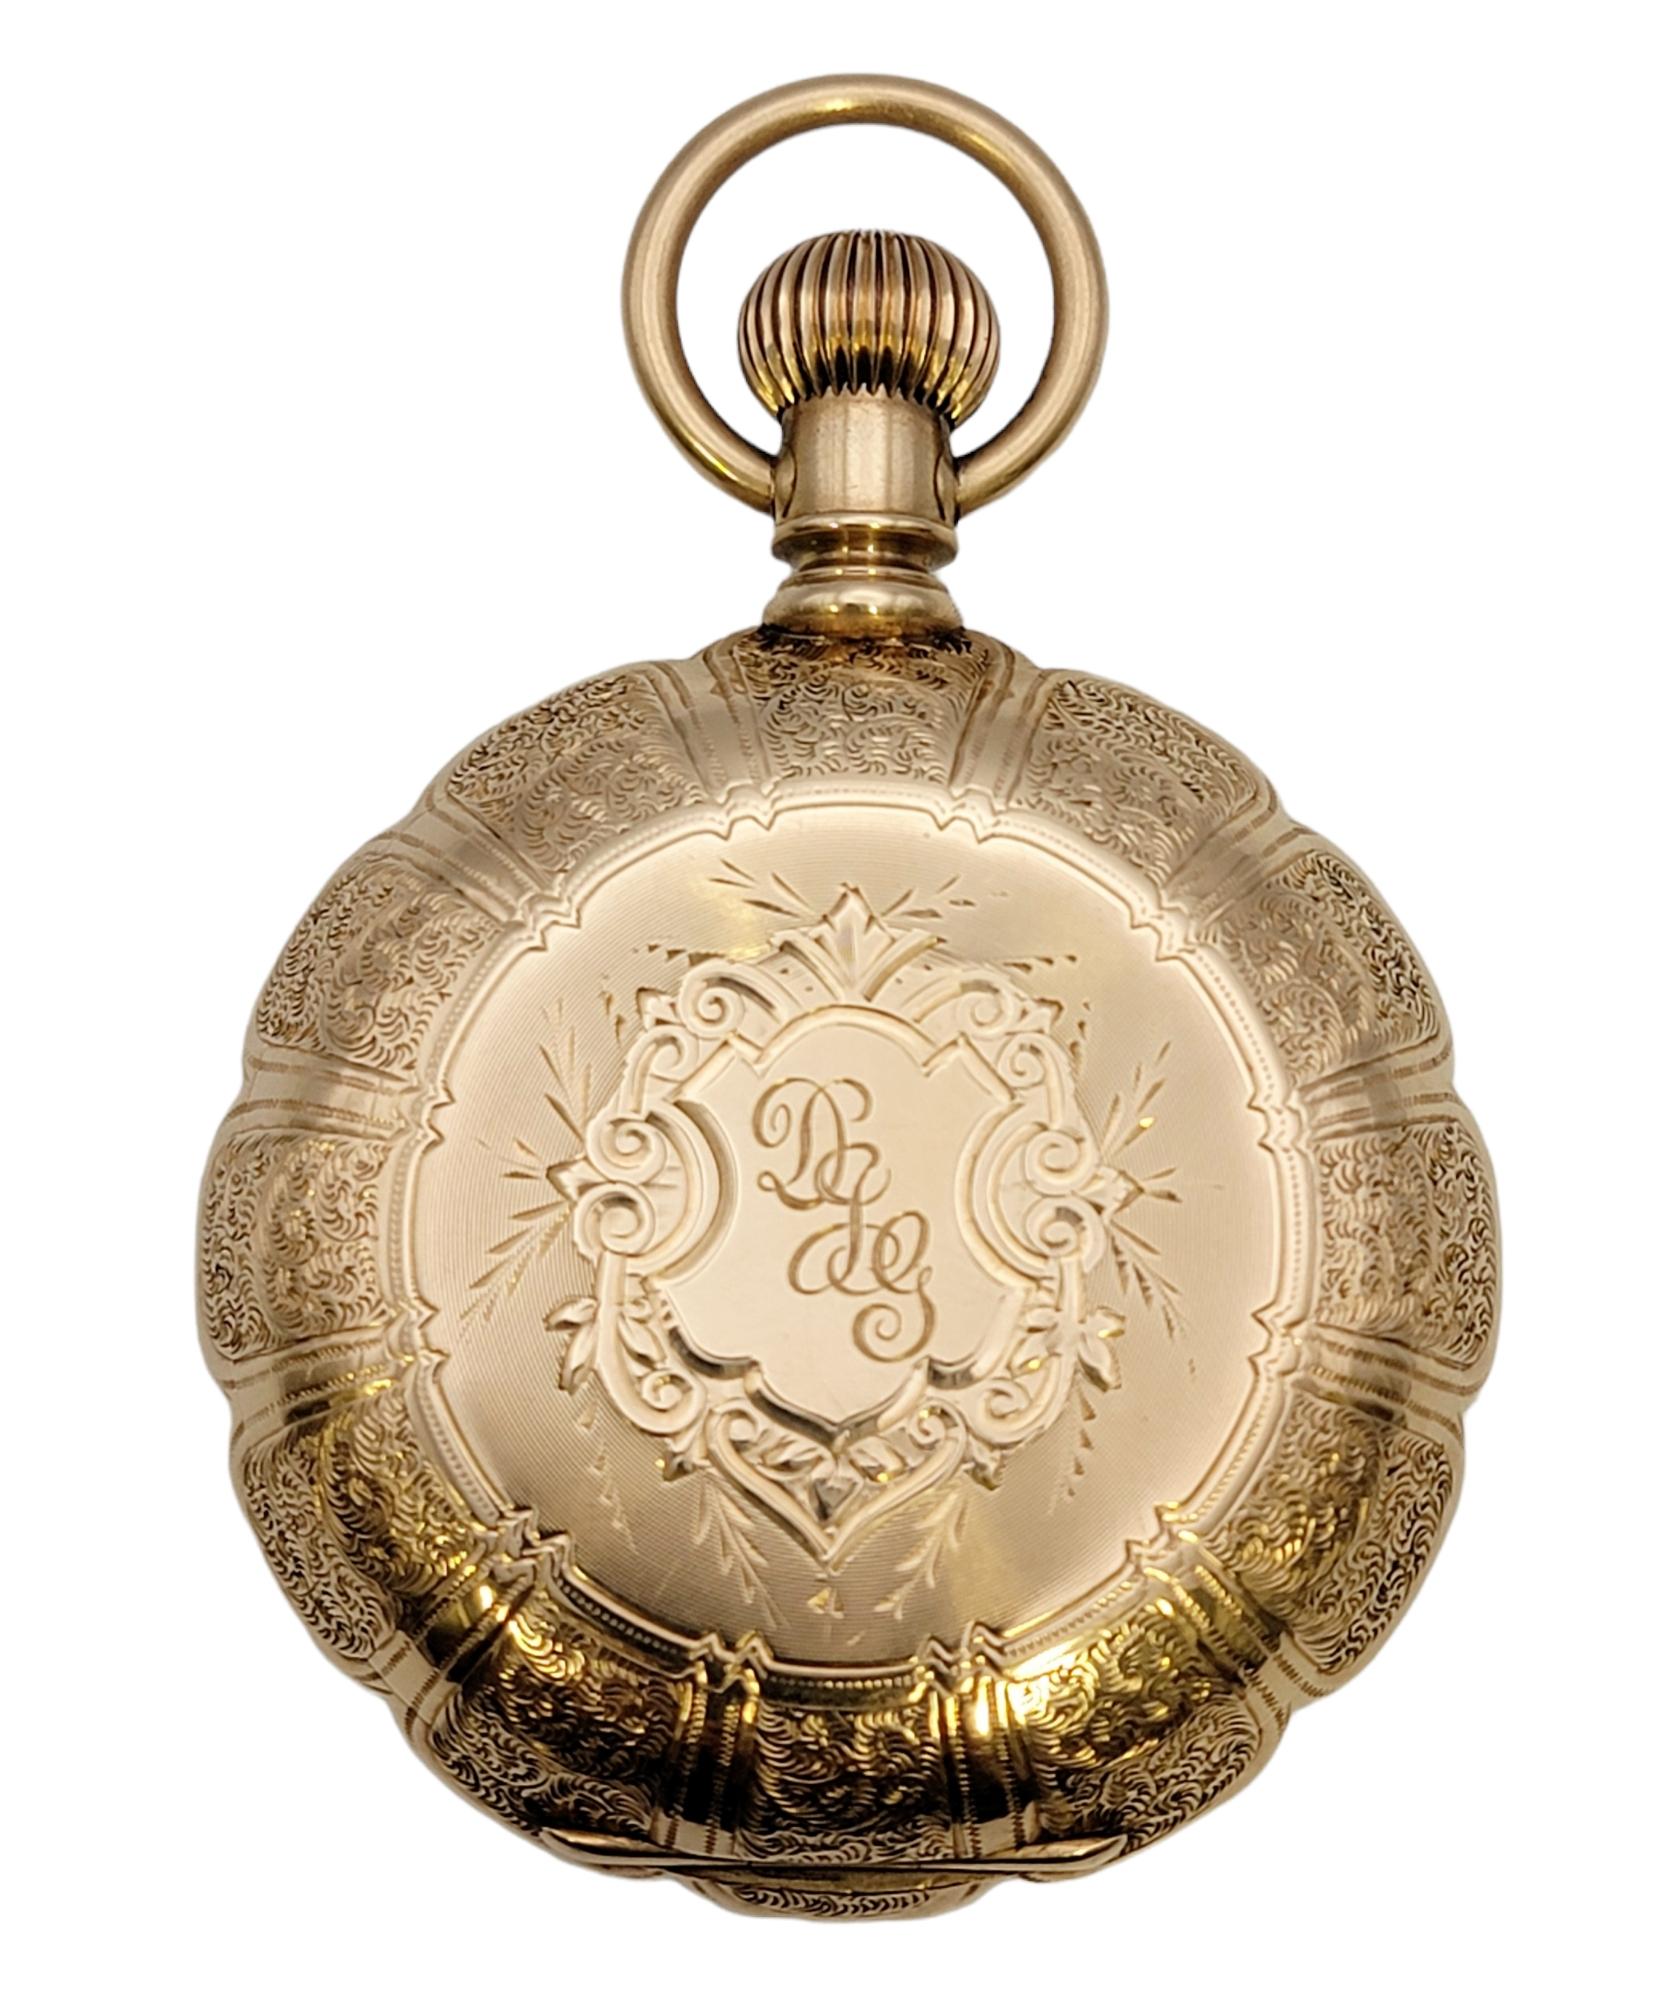 Diese seltene Vintage-Taschenuhr aus 14 Karat Gelbgold von Waltham ist ein beeindruckendes Stück Geschichte. Der luxuriöse Zeitmesser aus massivem Gold ist mit exquisiten Details ausgestattet. Sie hat ein 46-mm-Gehäuse, ein rundes weißes